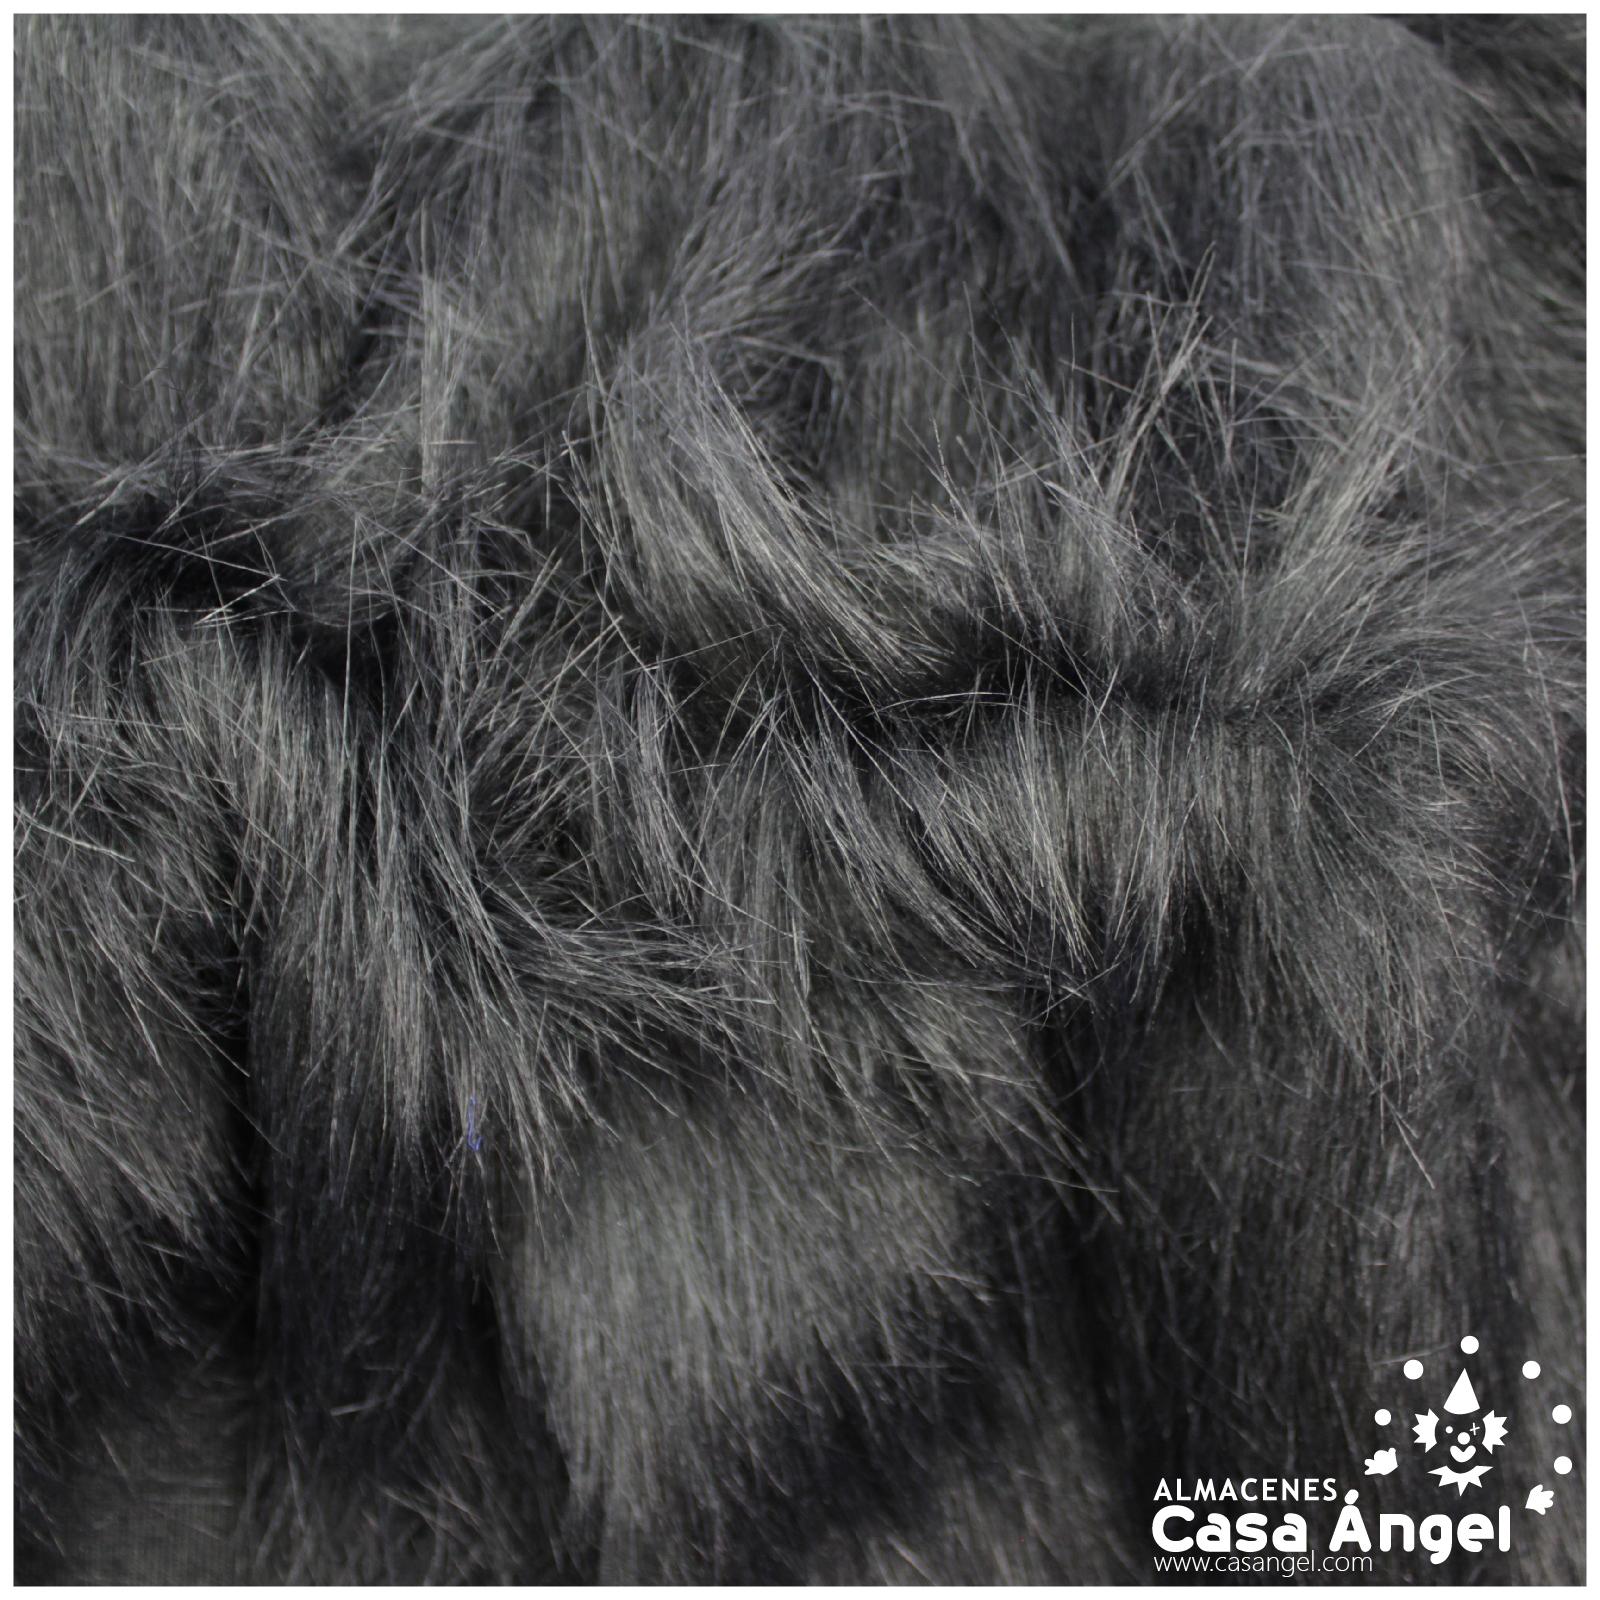 Tela de pelo dacha sintético. Es un tejido en base de punto rígido de pelo  largo de aproximadamente unos 7cm que imita al pelo d